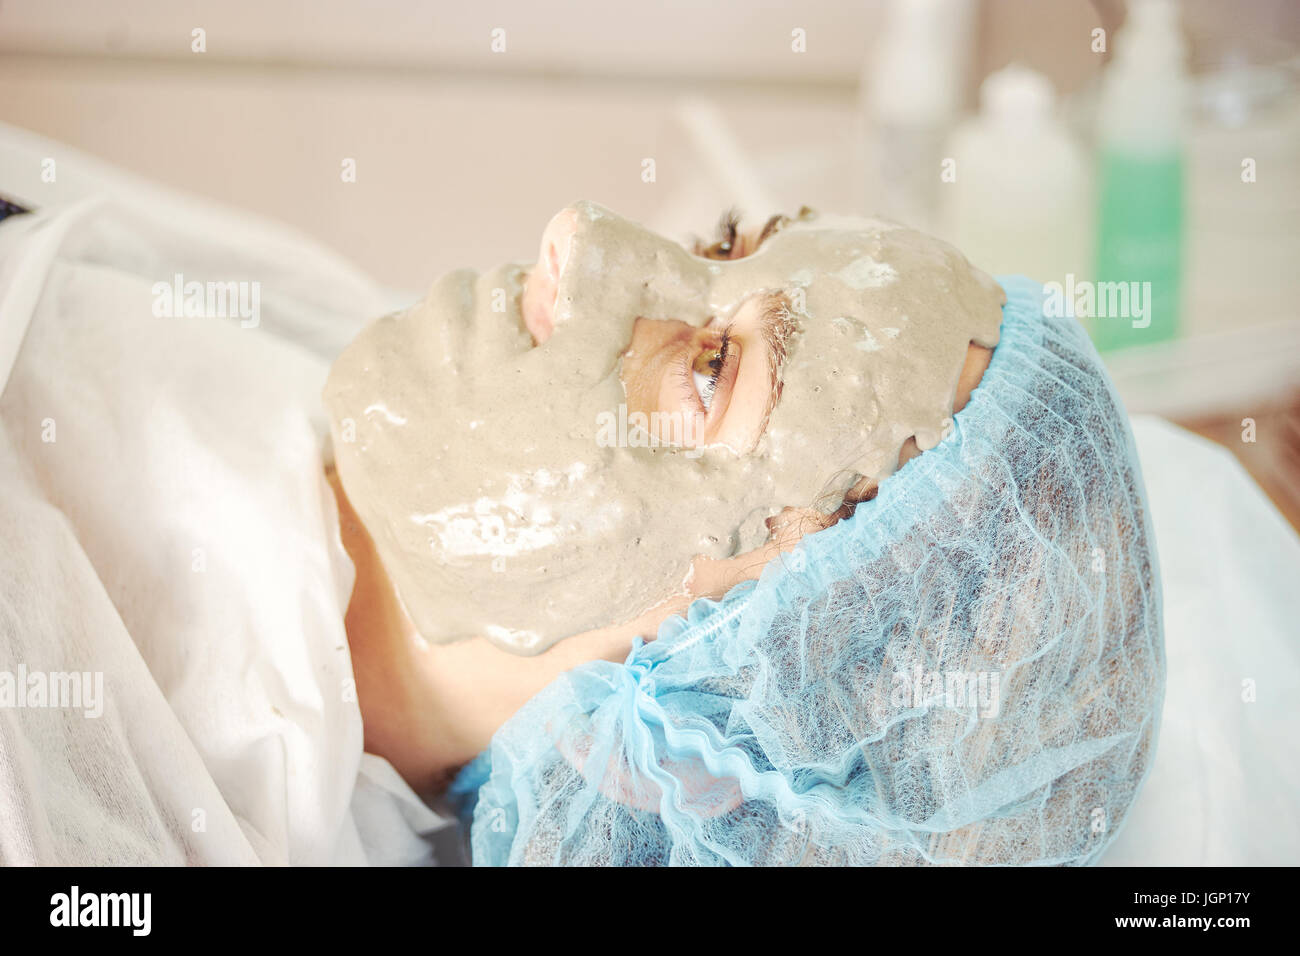 Cerca de la cara de la mujer durante el procedimiento de cosmetología Foto de stock